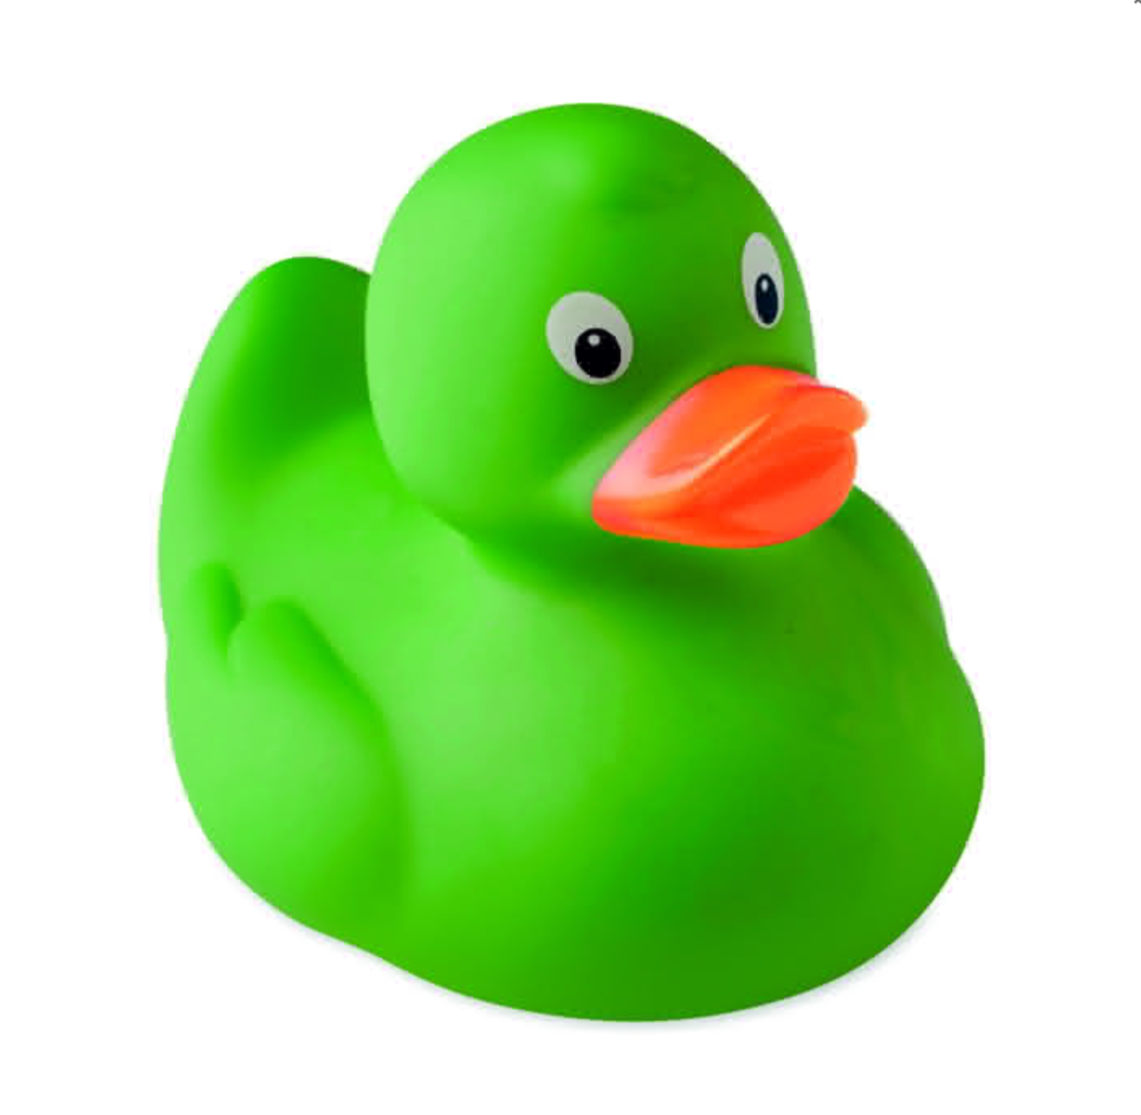 Original green duck